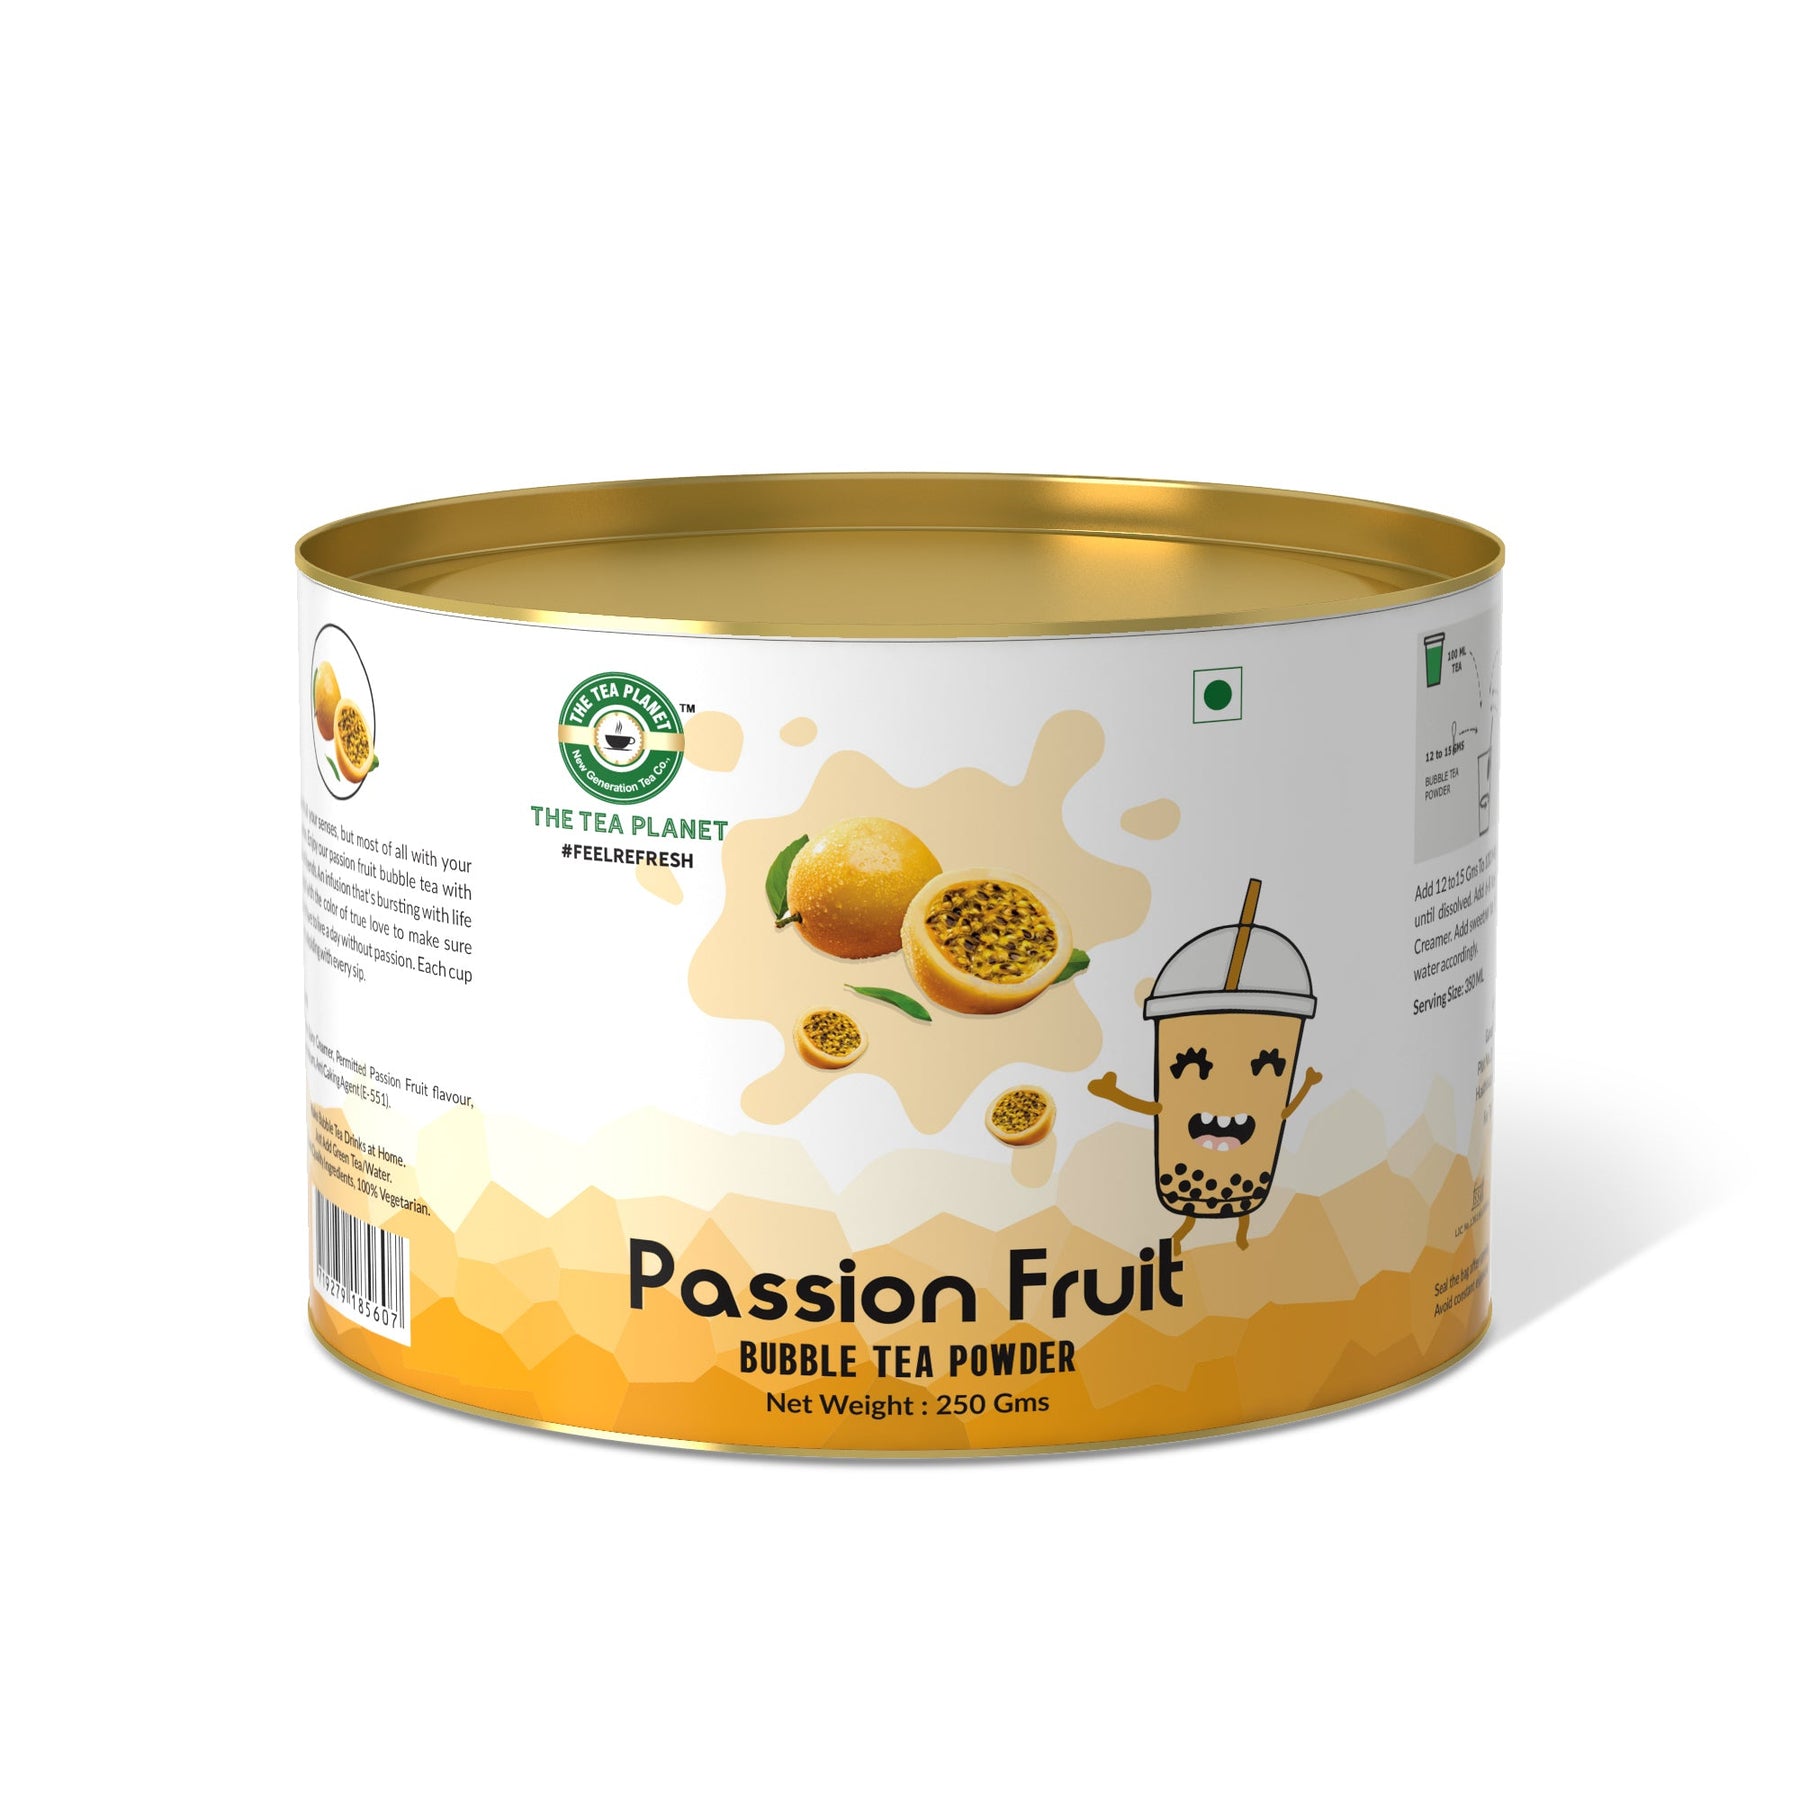 Passion Fruit Bubble Tea Premix - 250 gms